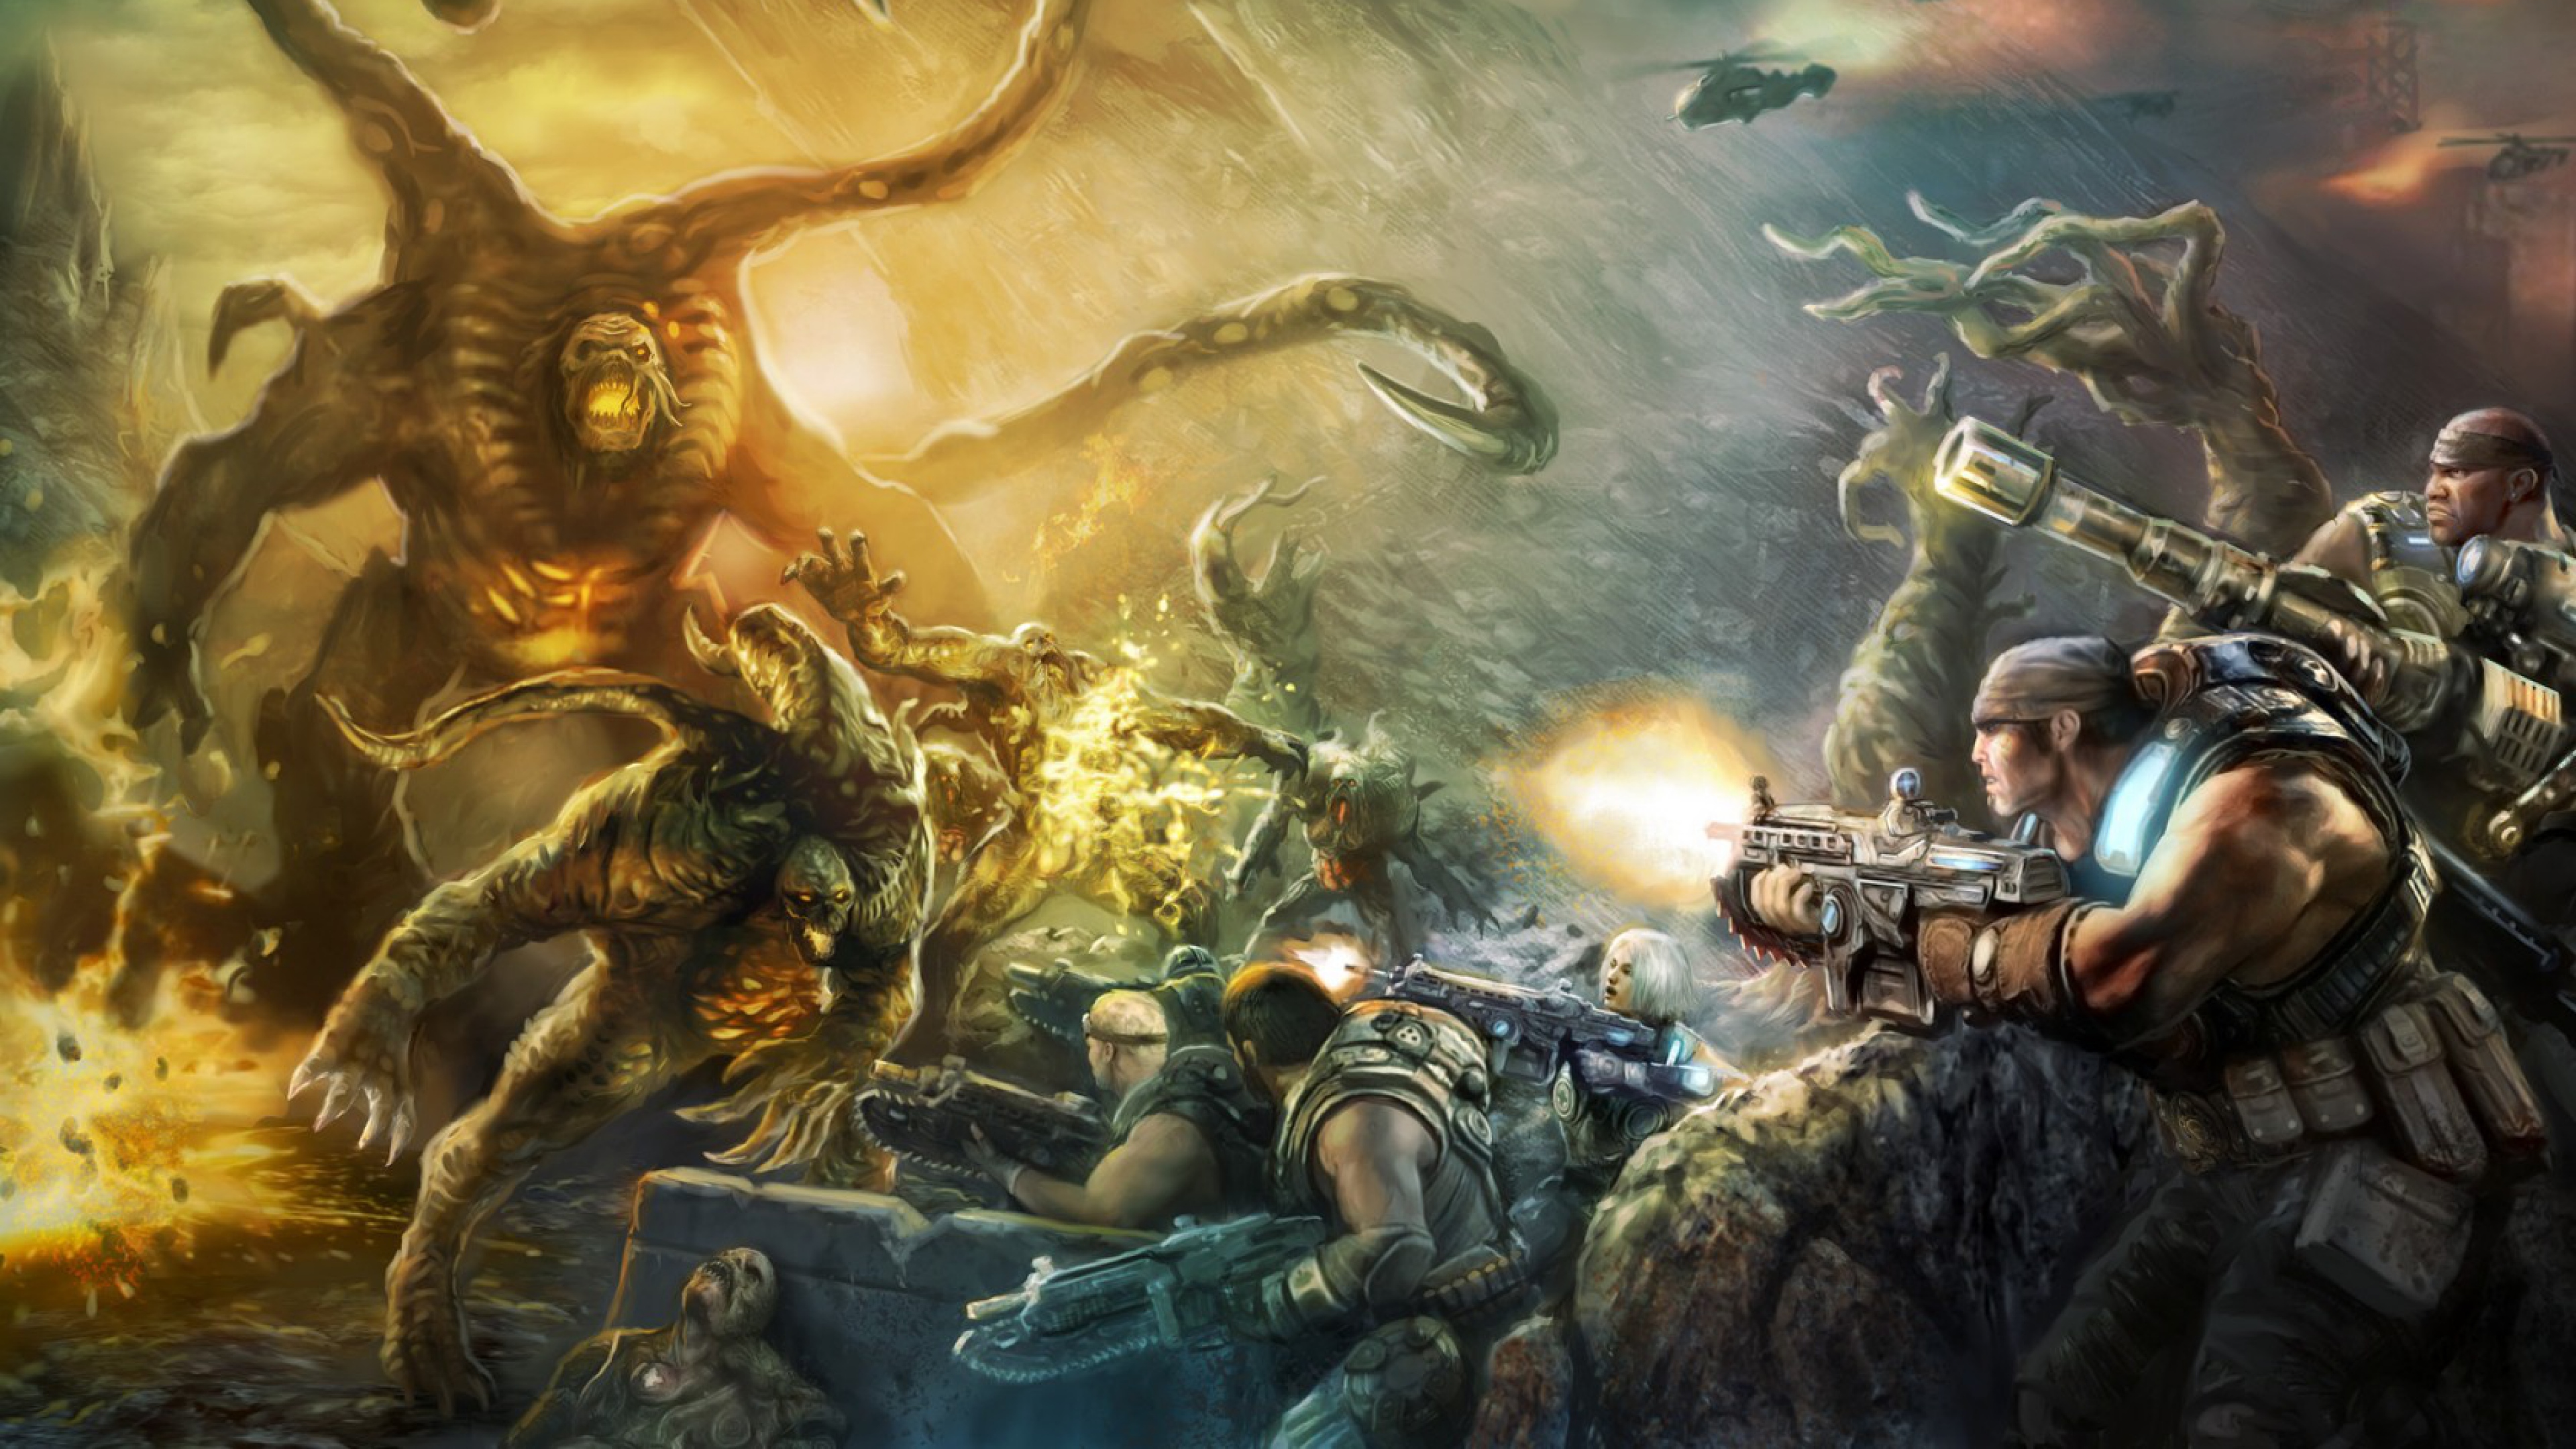 fondo de pantalla de juegos 4k,juego de acción y aventura,mitología,cg artwork,juego de pc,demonio